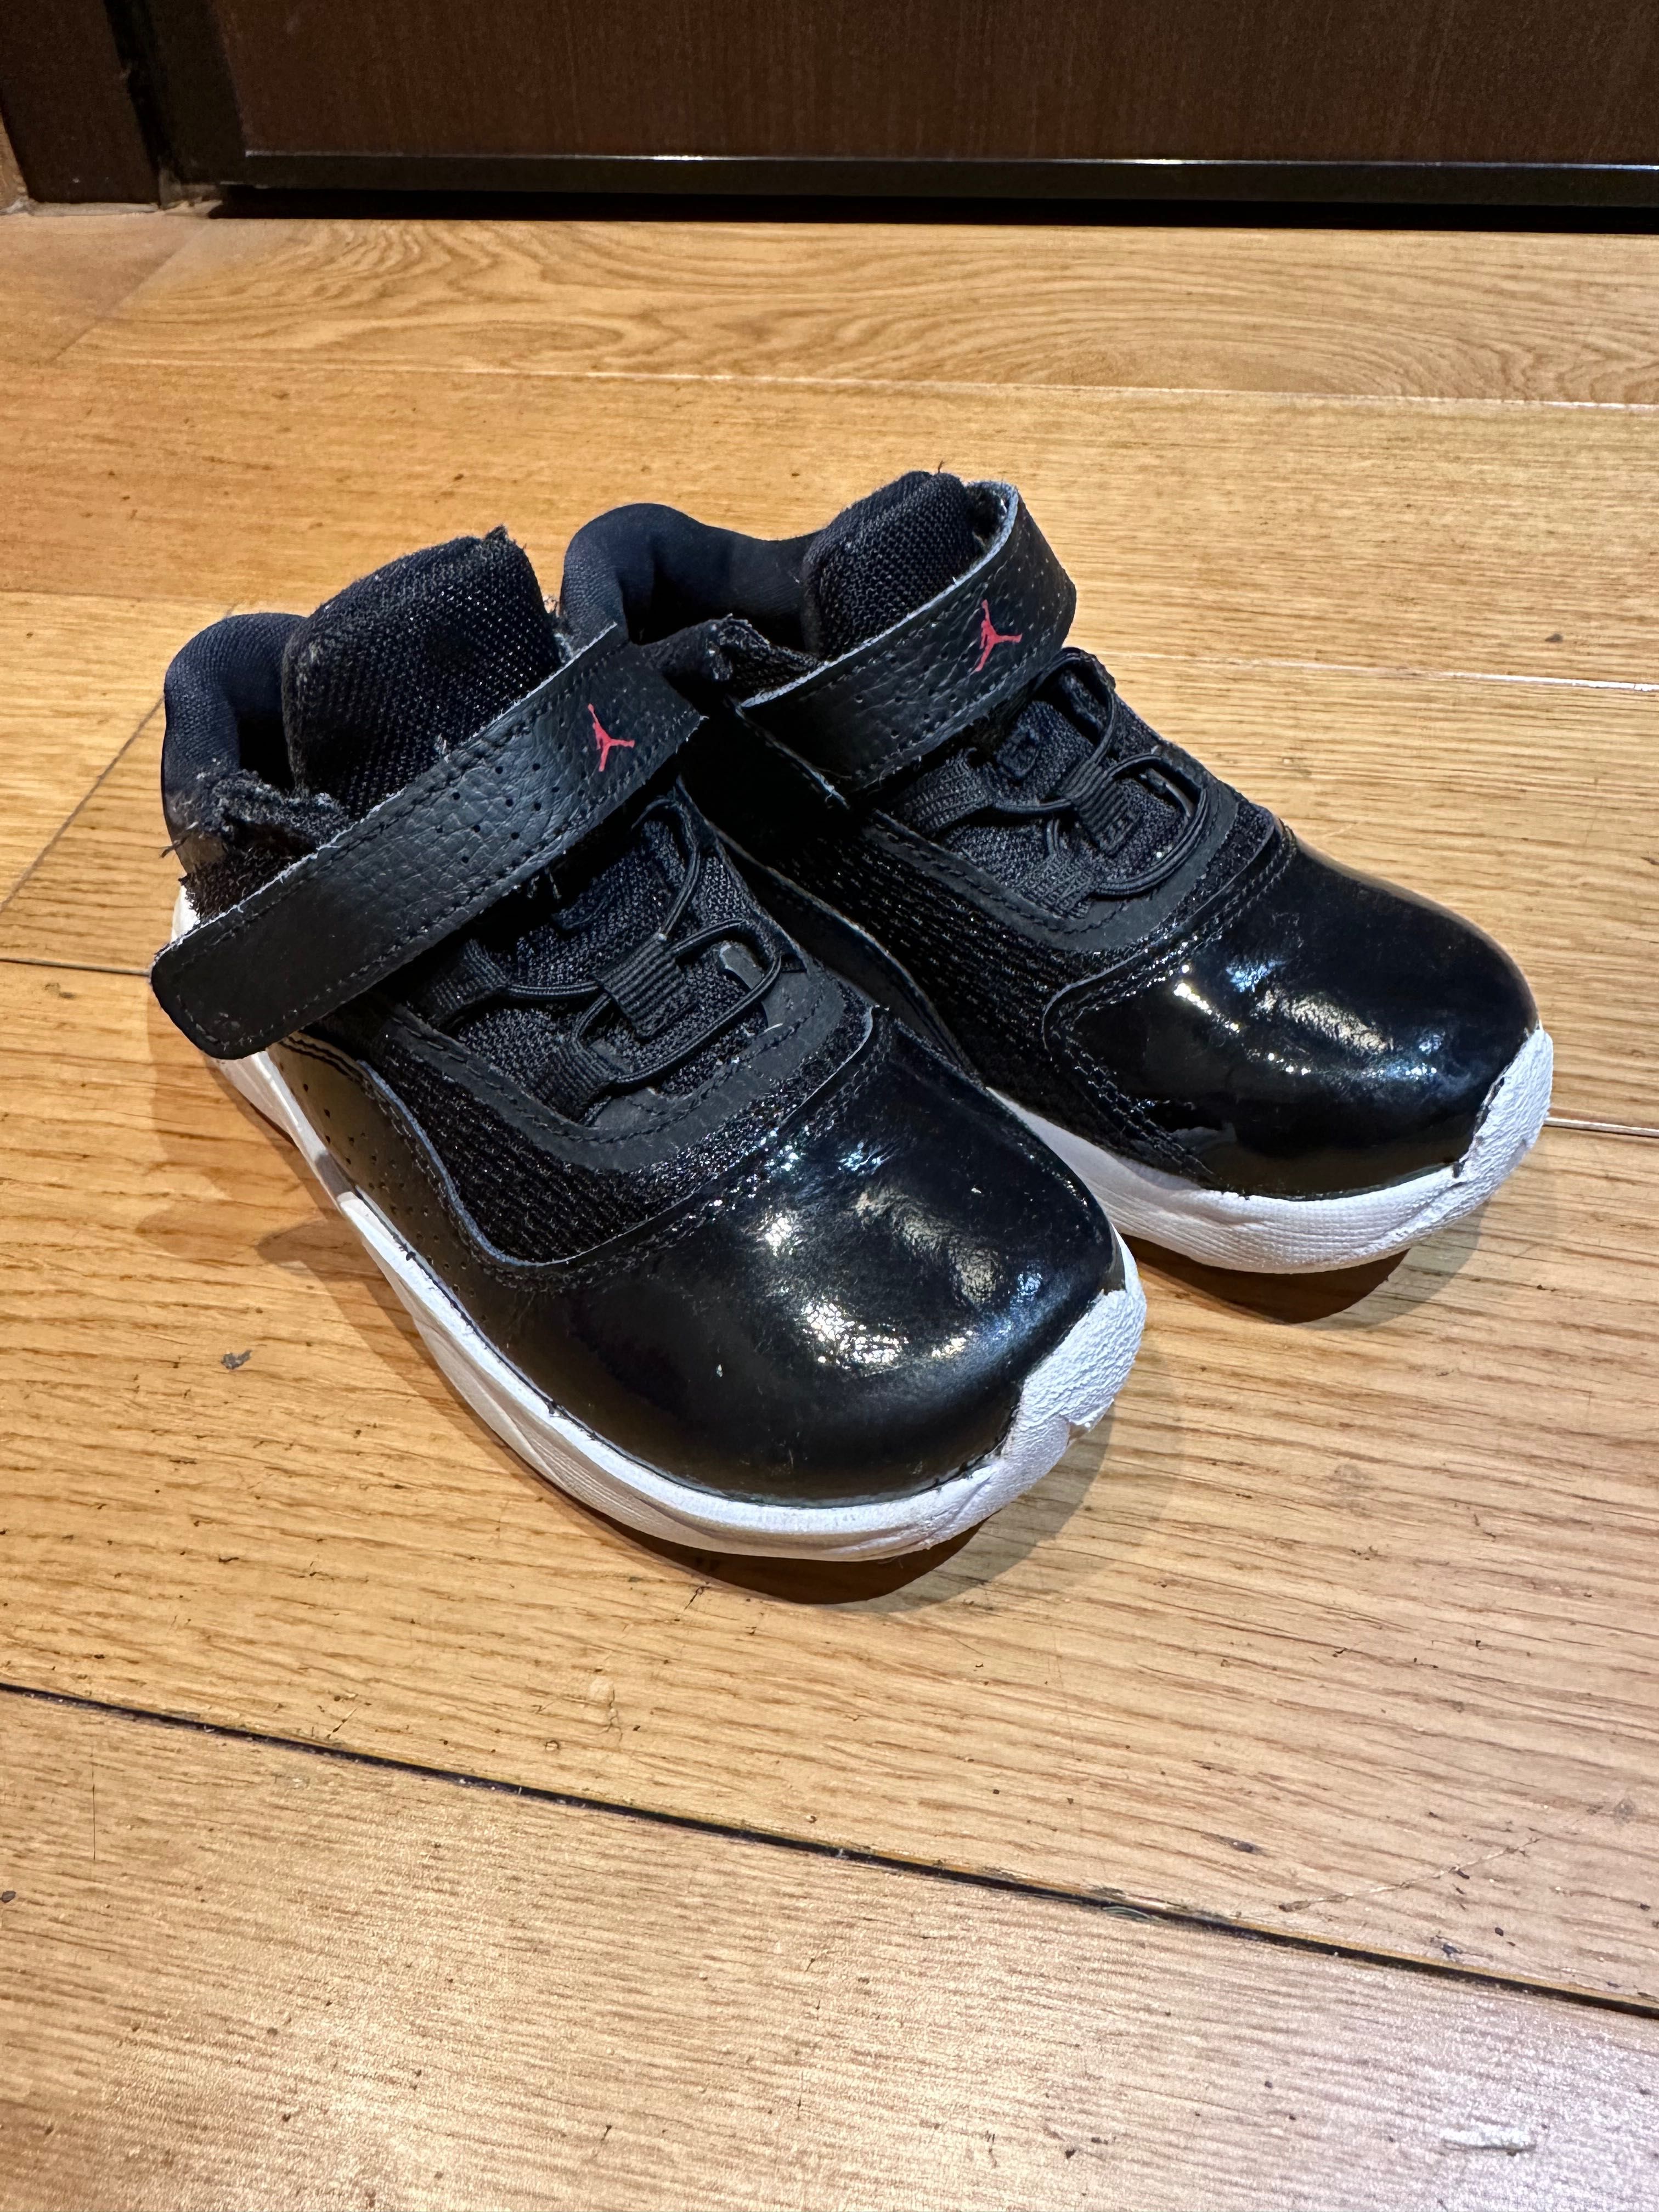 Adidasi copii Nike Air Jordan, marime 27, interior 17 cm